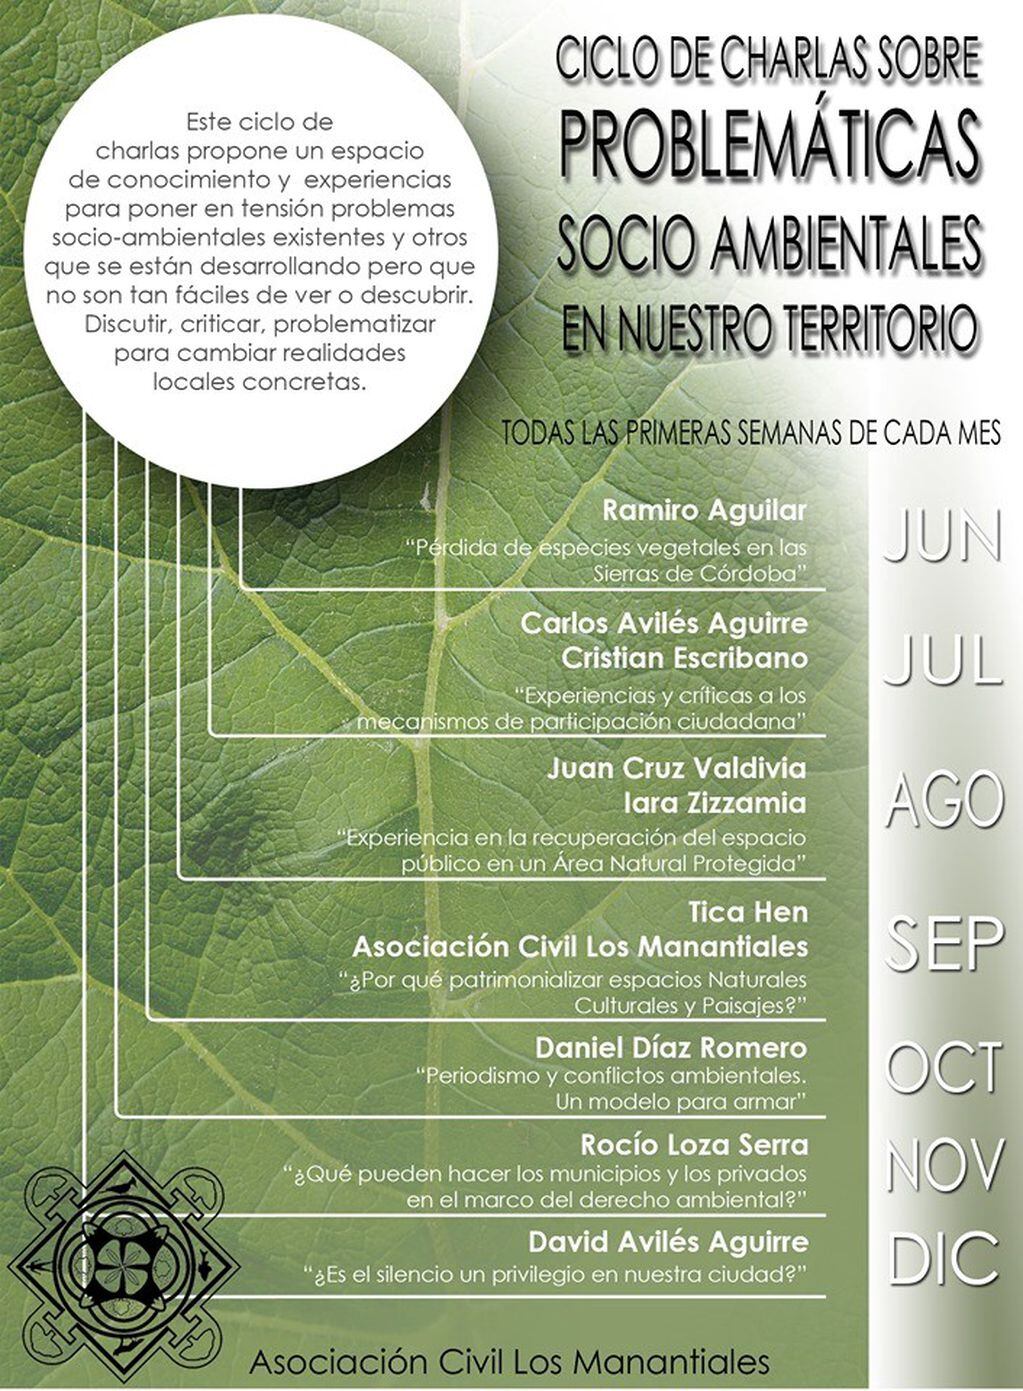 Ciclo de charlas sobre problemáticas socio ambientales en Río Ceballos.